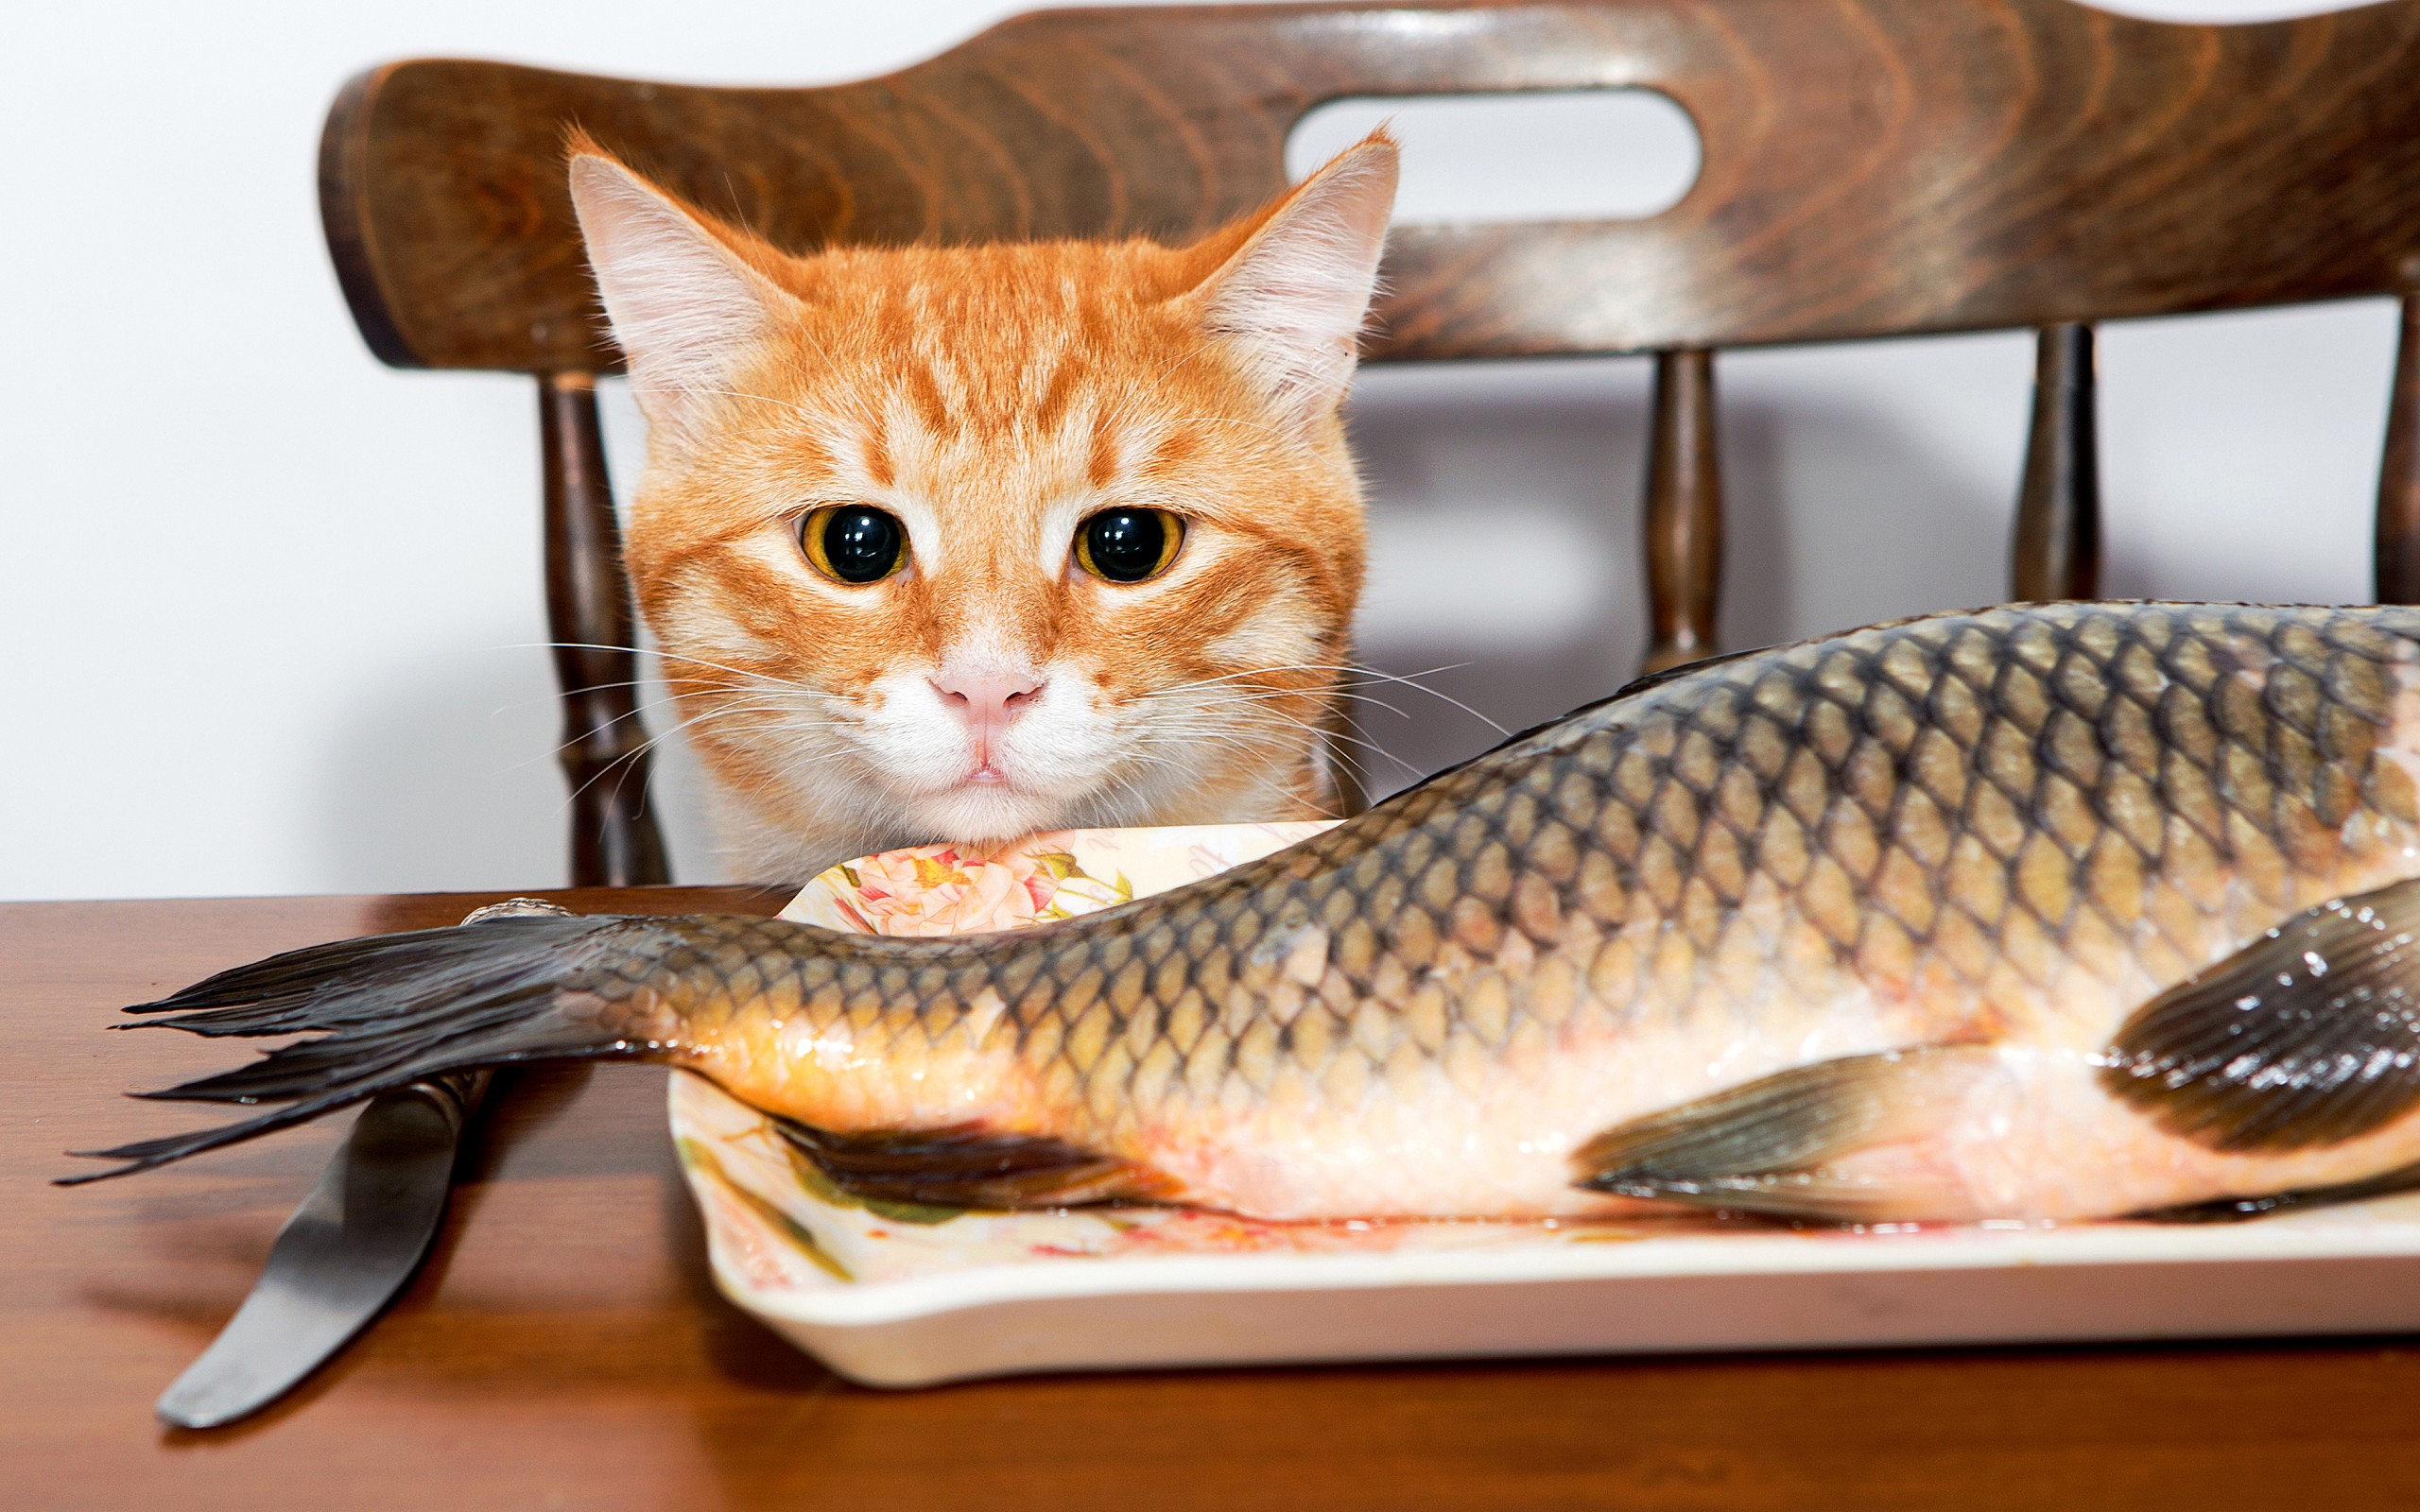 рыжий кот на стуле, смотрит на рыбу, смешные домашние любимцы, Red cat on a chair, looks at the fish, funny pets